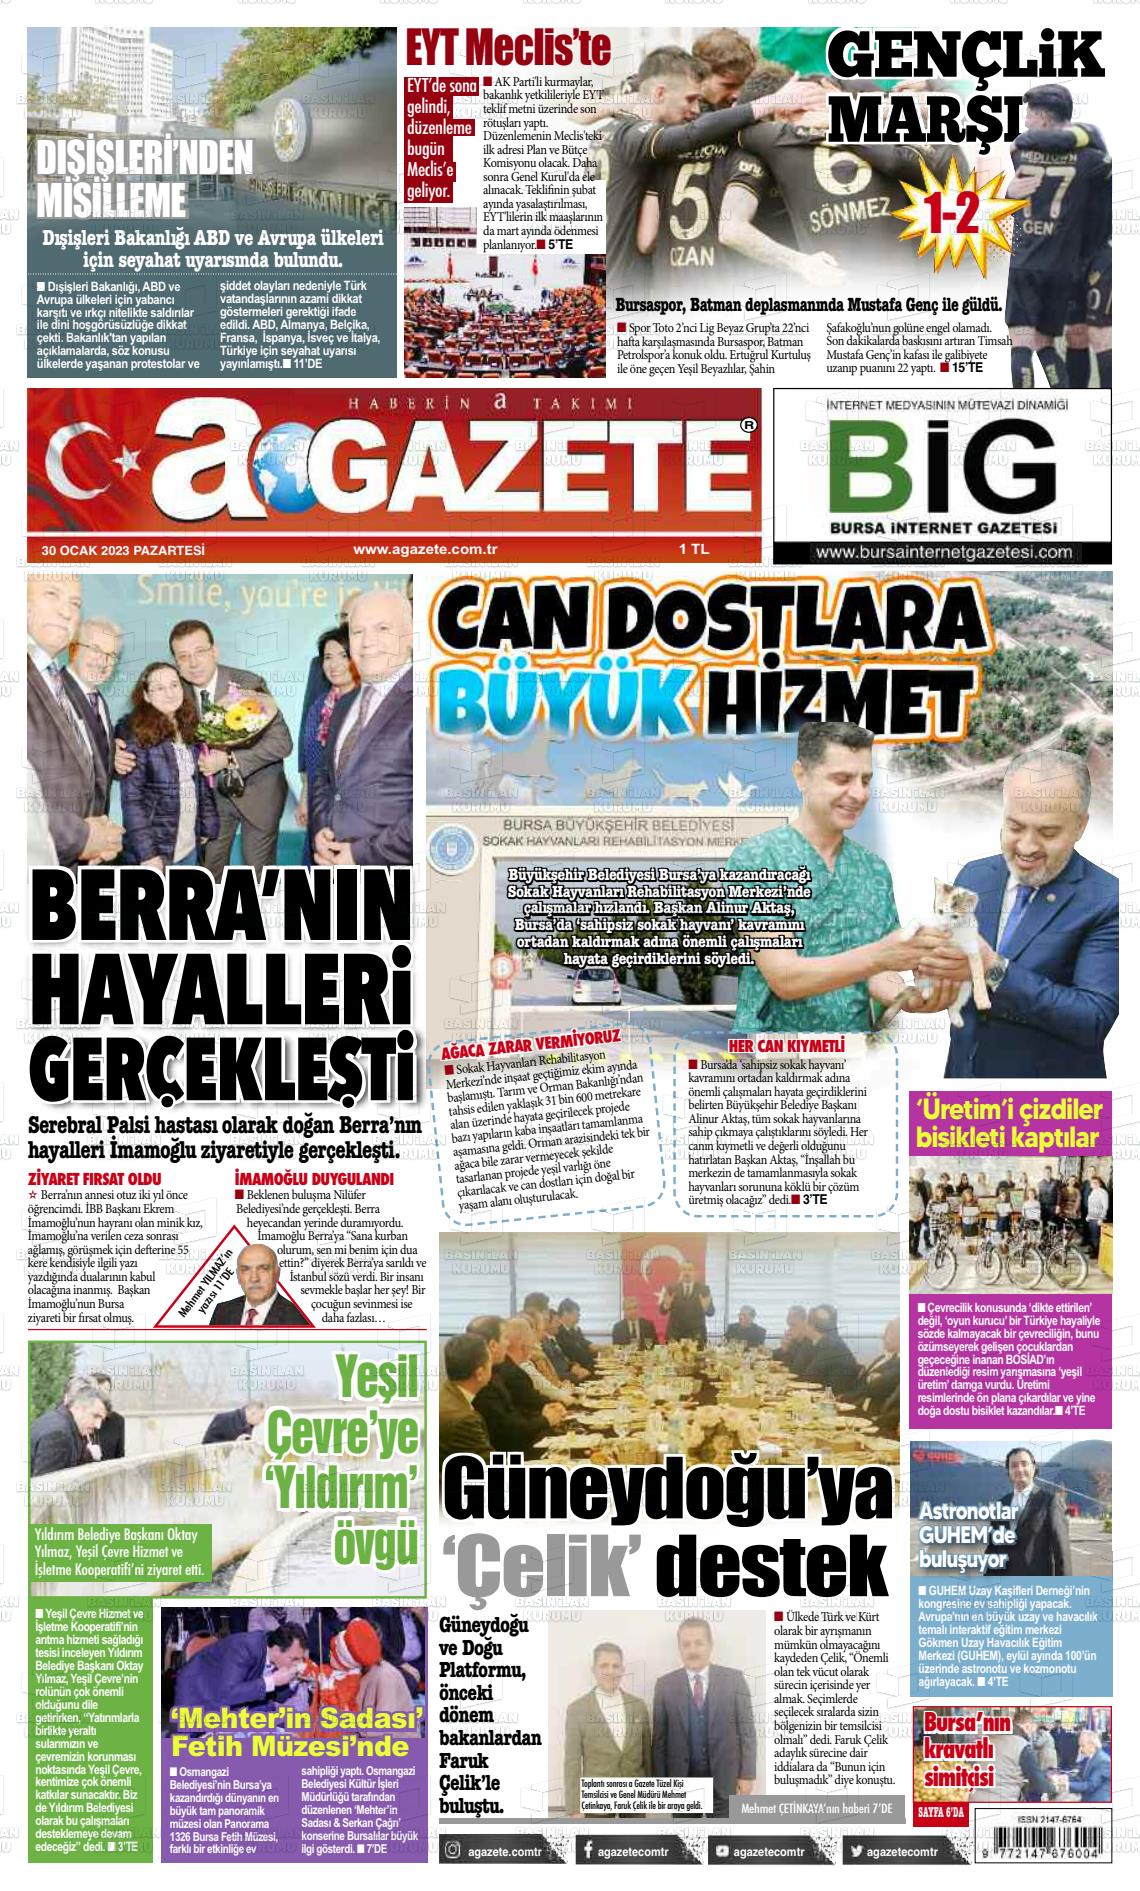 30 Ocak 2023 a gazete Gazete Manşeti